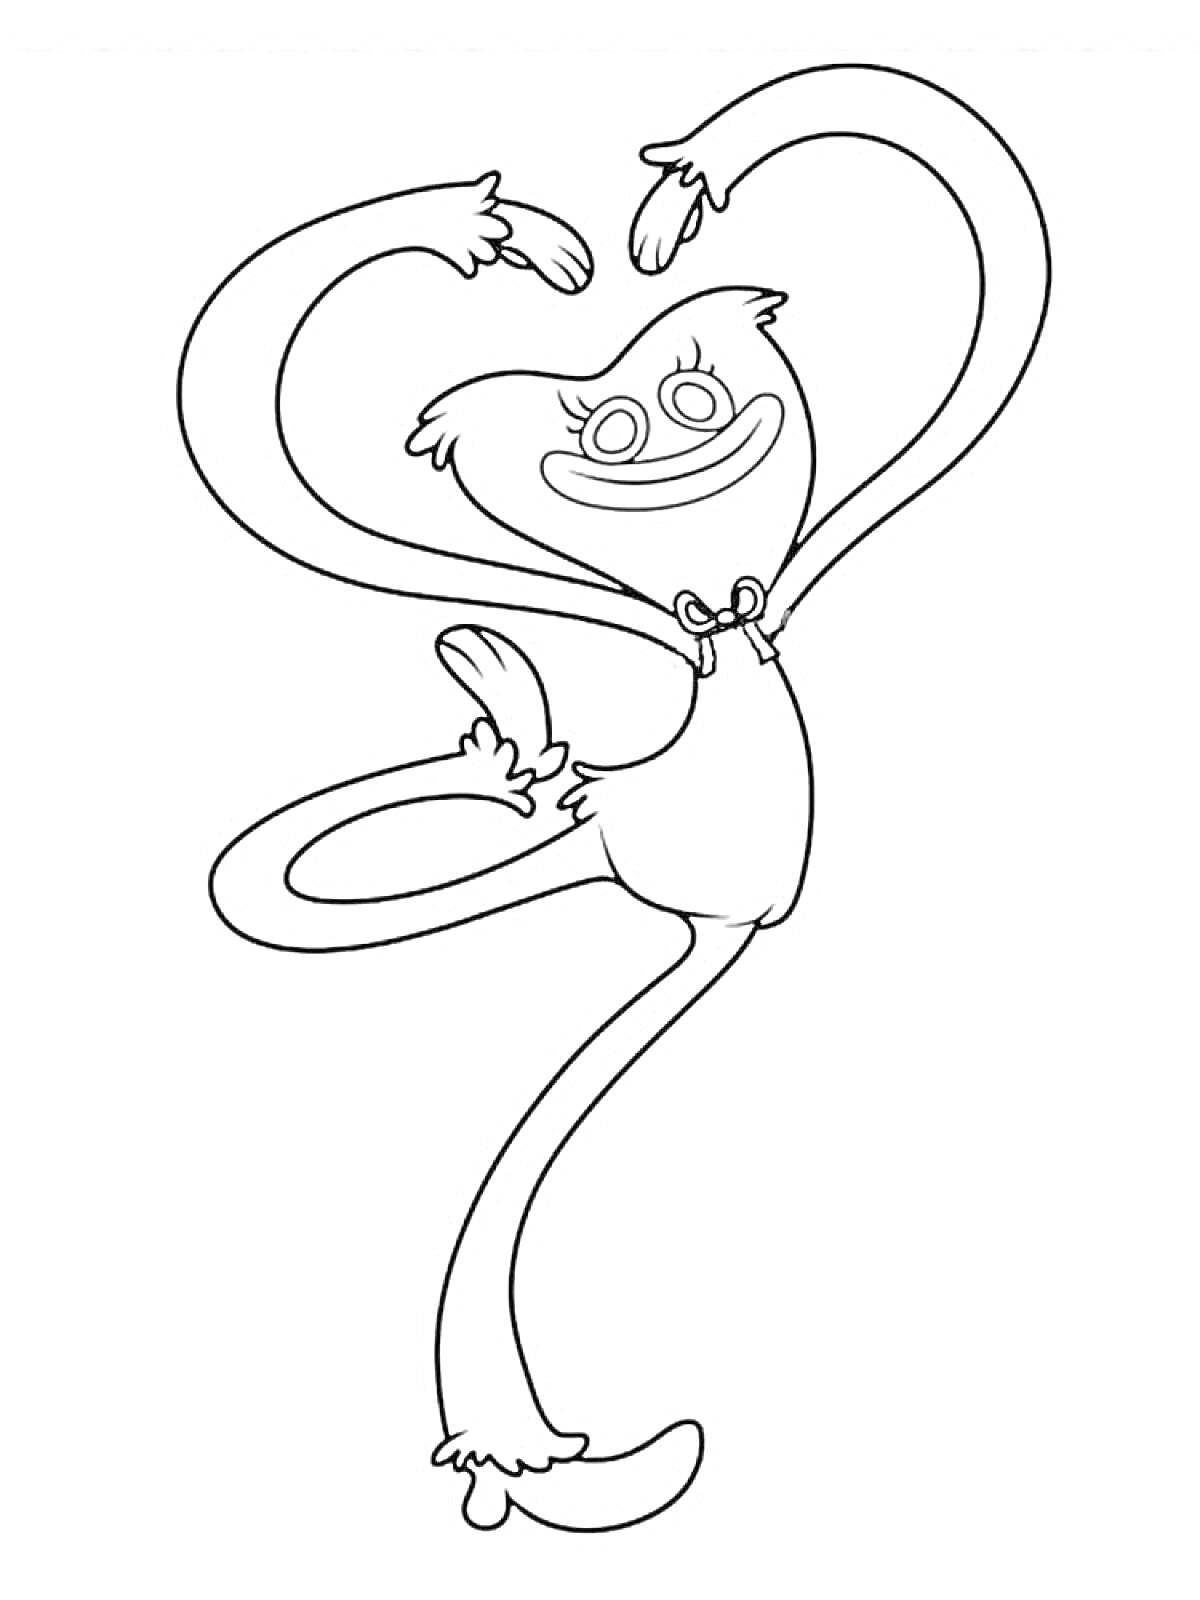 Раскраска Киси Миси с изображением улыбающегося, танцующего персонажа с длинными руками и ногами